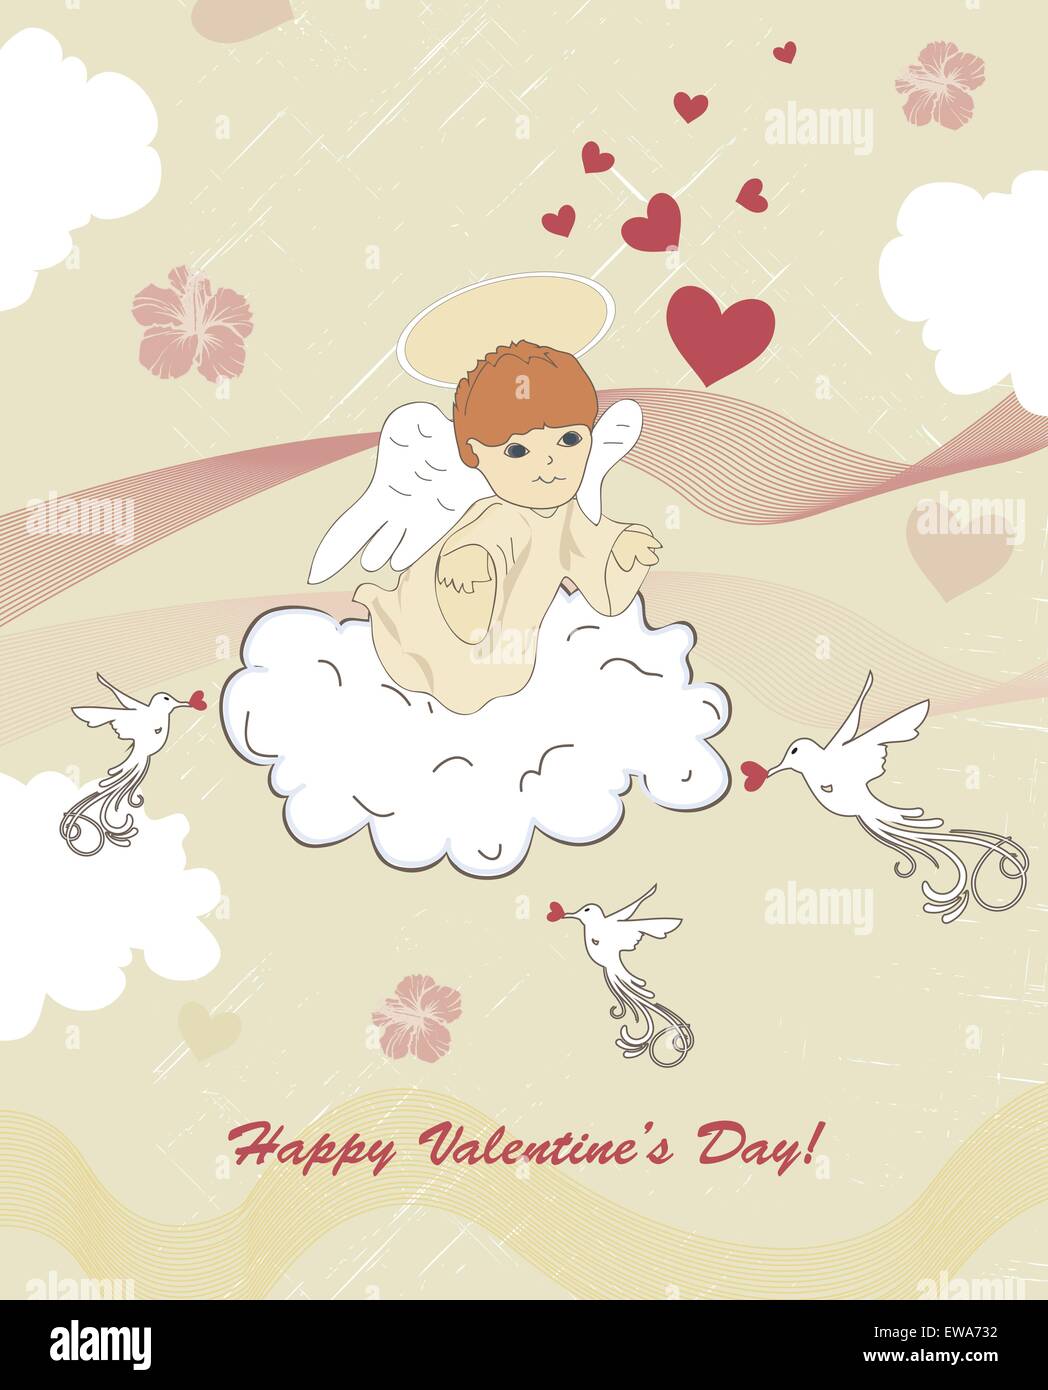 Vintage Valentine card with retro abstract design élégant, avec cupidon ange sur coeur fleurs nuage d'oiseaux et de ruban sur fond gris verdâtre avec étiquette de texte. Vector illustration. Illustration de Vecteur